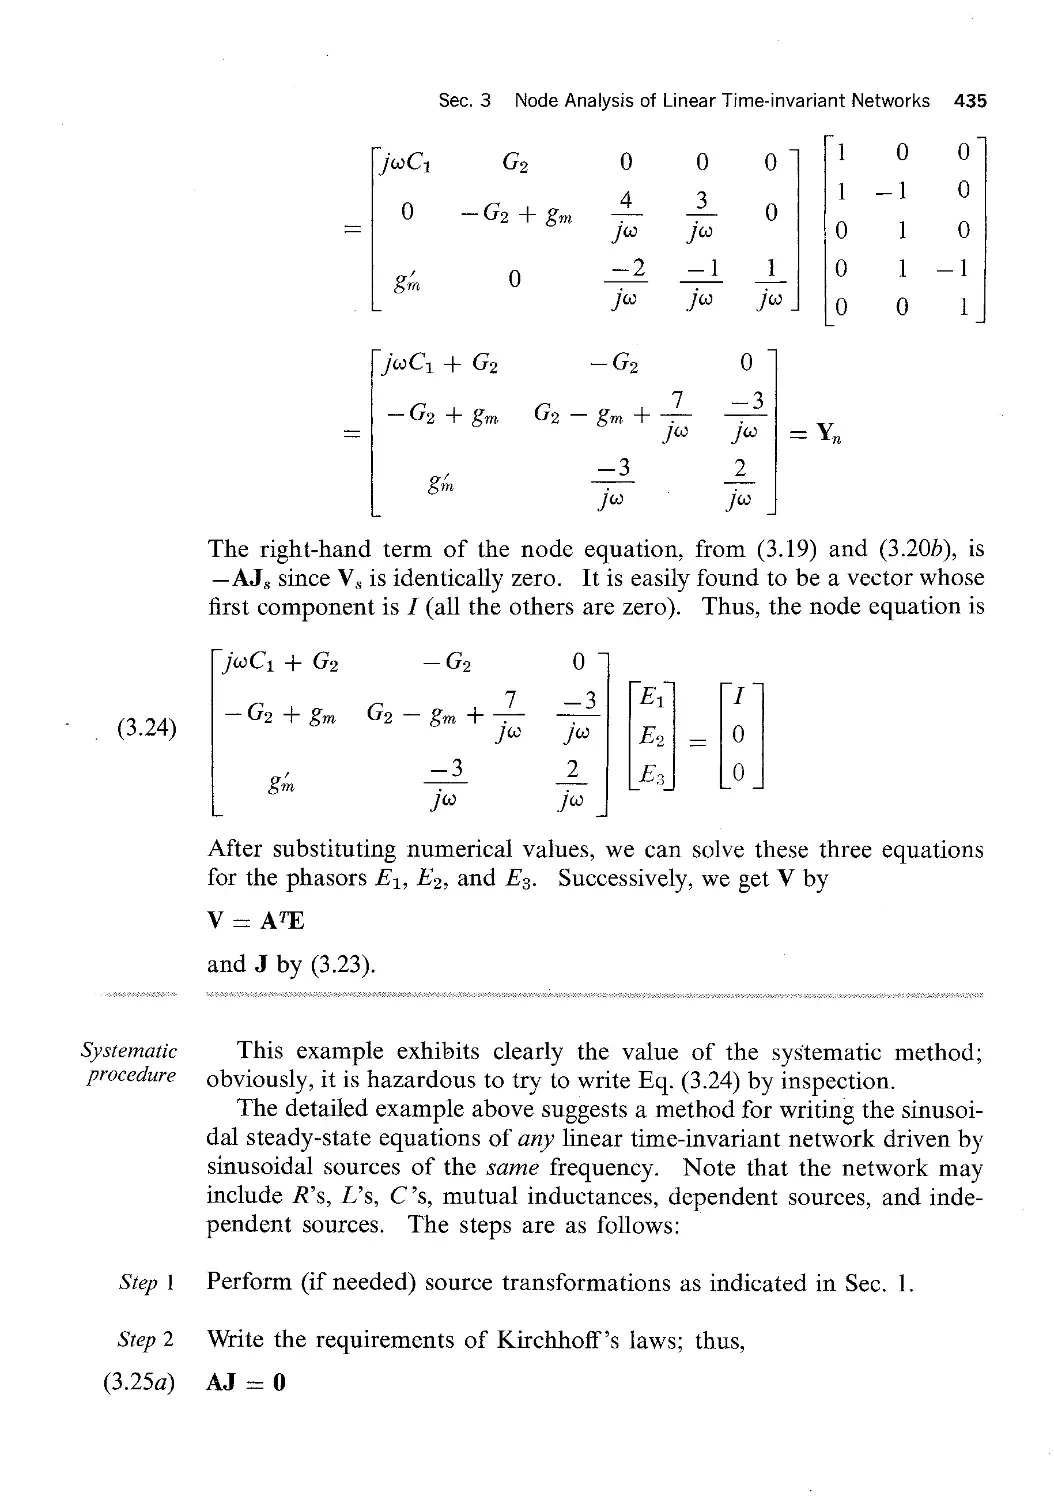 2.3 - Thévenin and Norton Equivalent Circuits